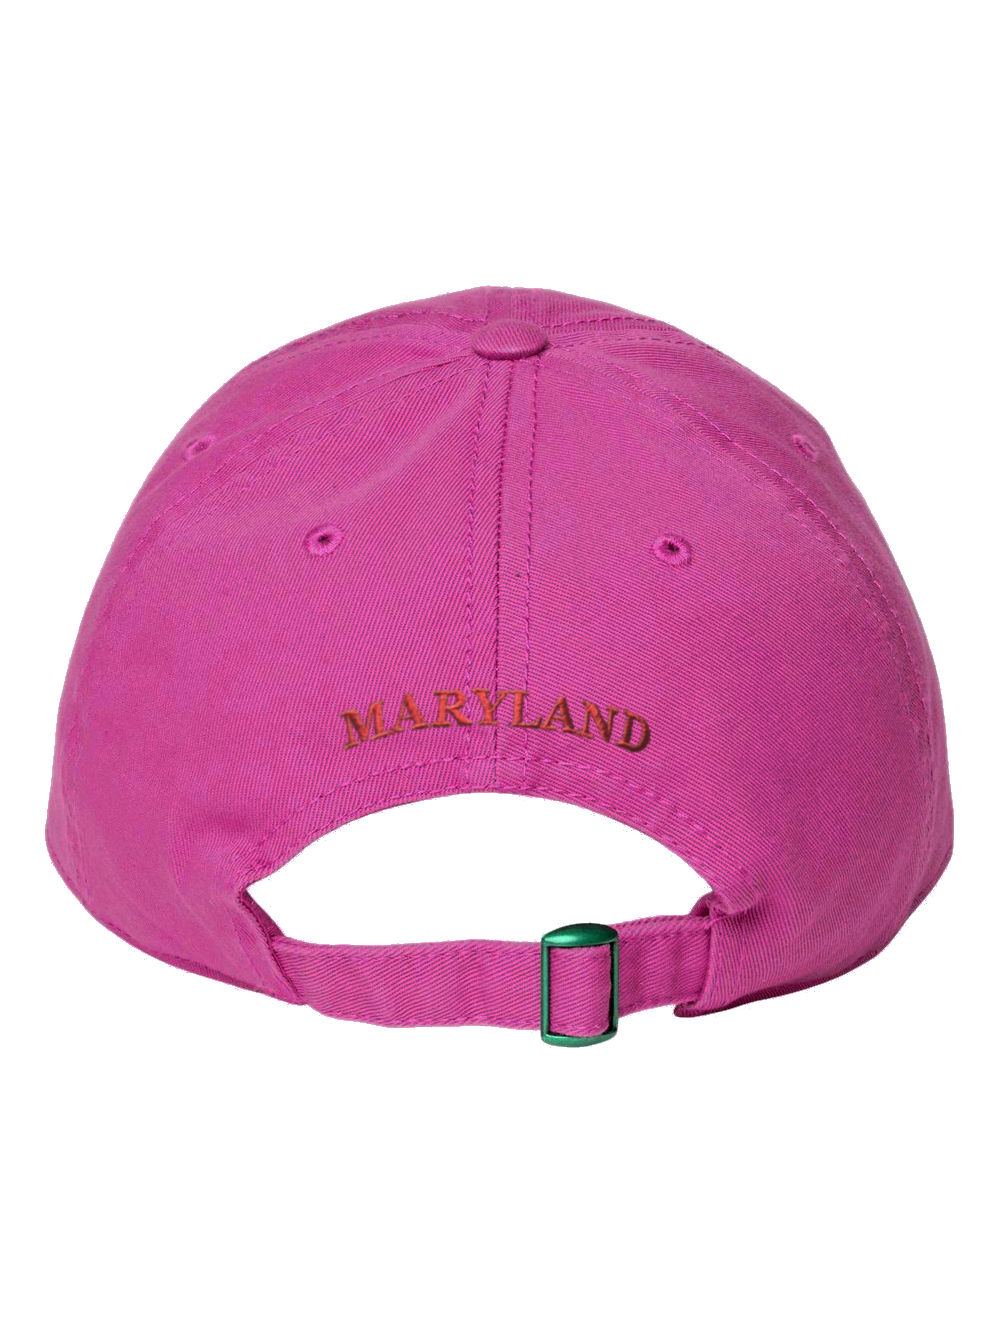 maryland-crab-embroidered-baseball-cap-hot-pink